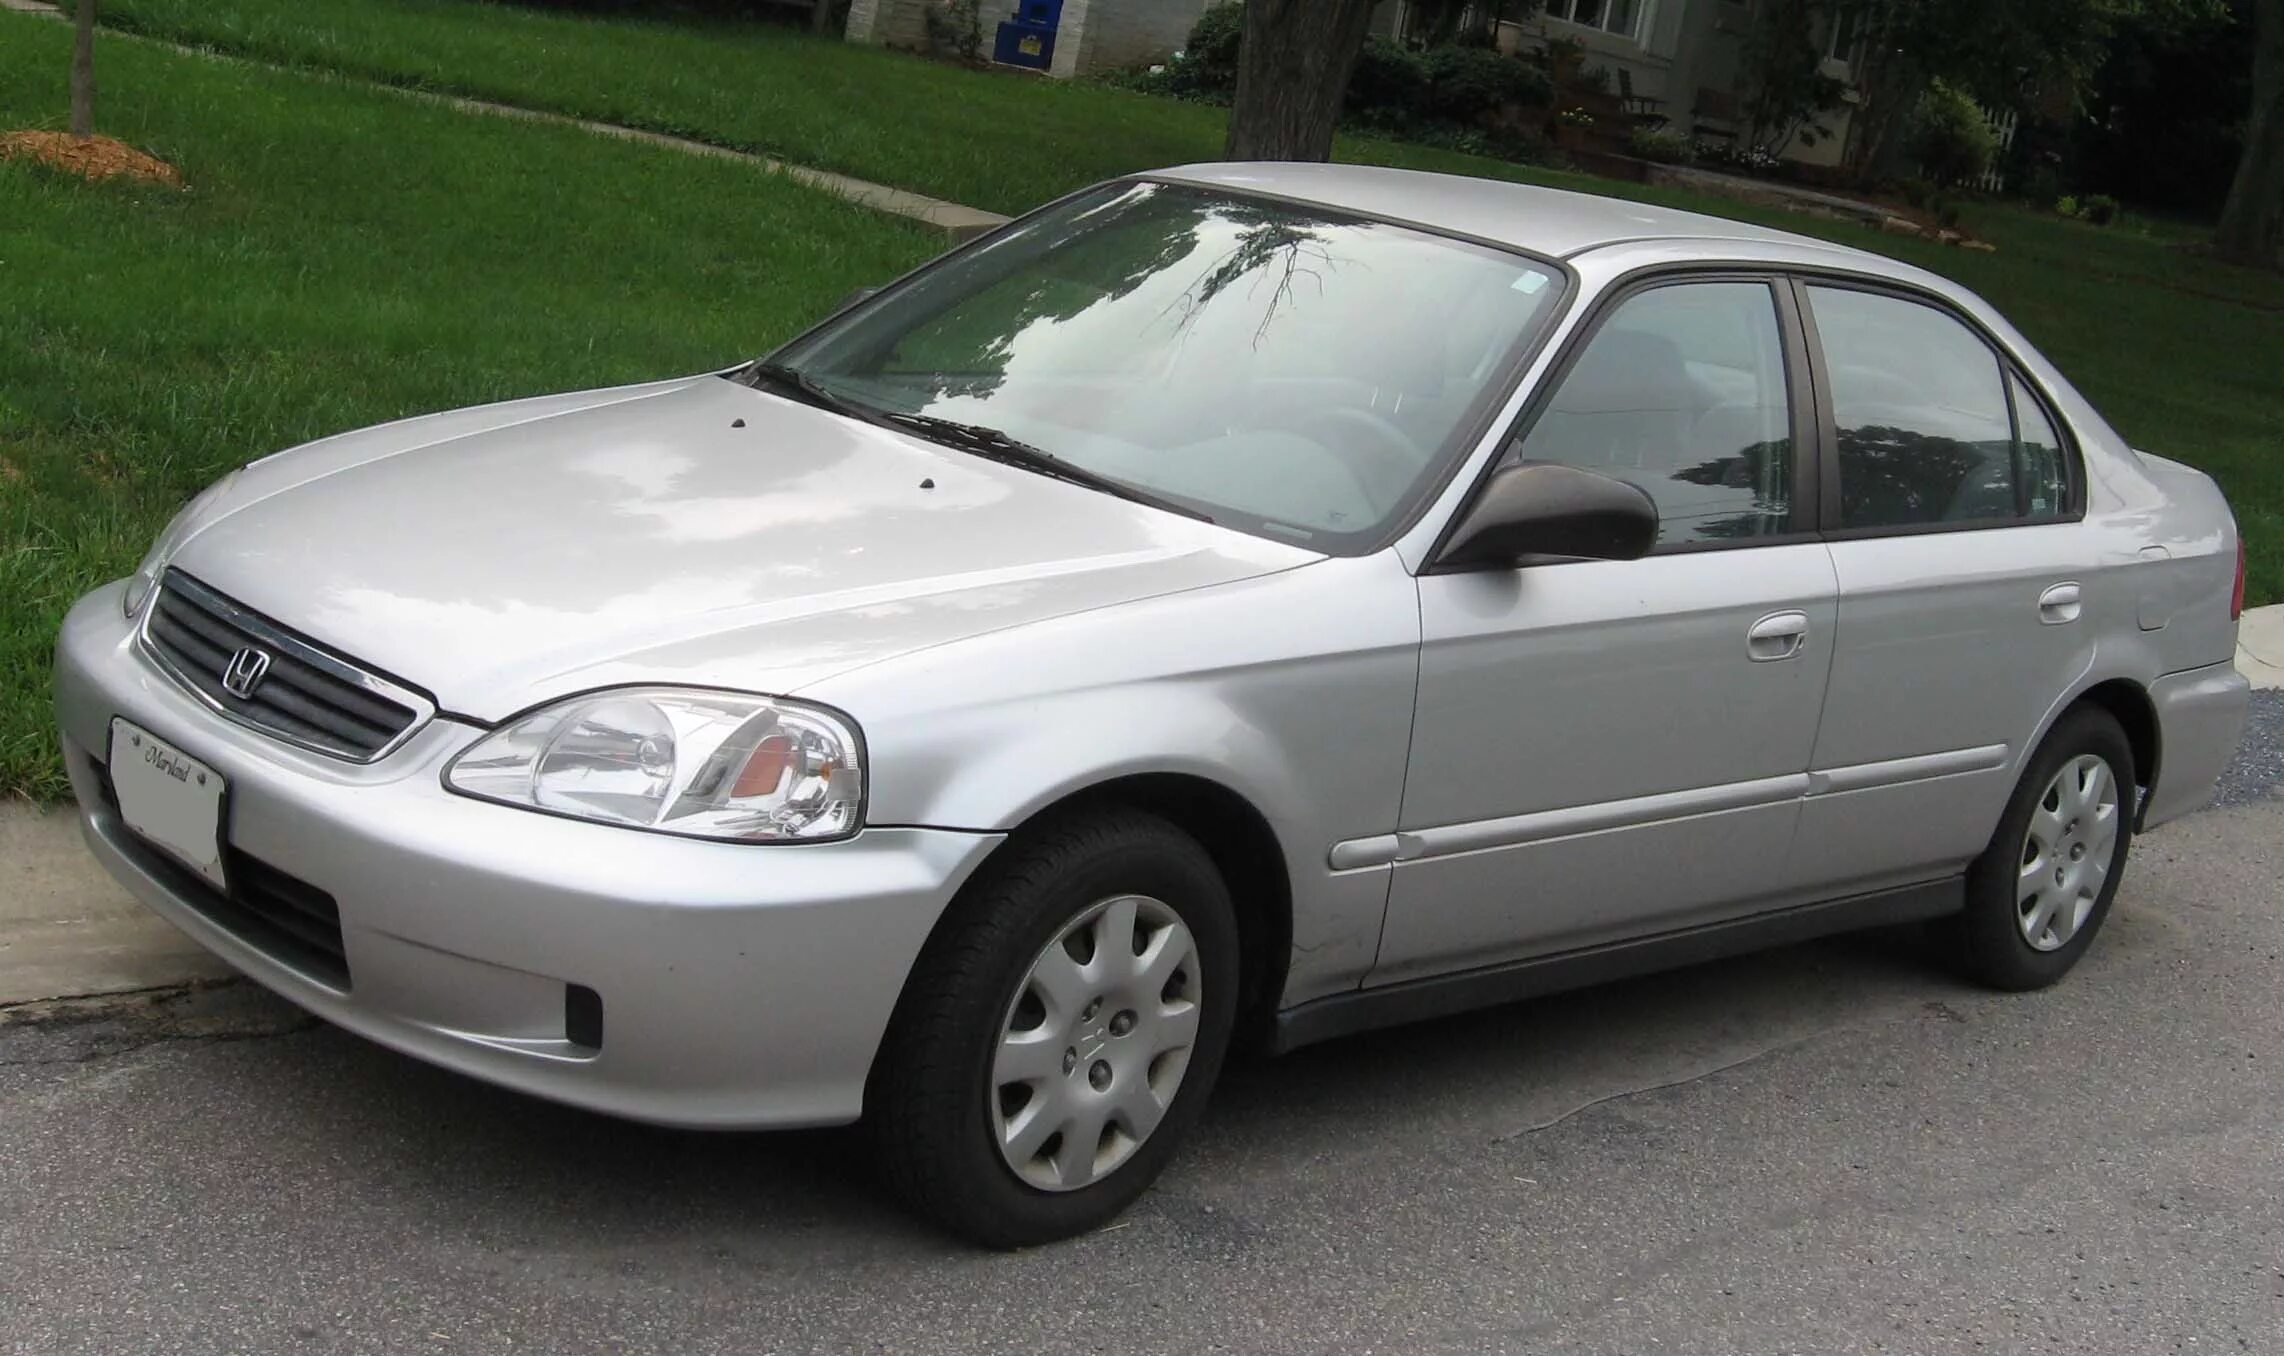 Honda Civic 1999 седан. Honda Civic 6 1.4 2000. Honda Civic vi 1.5. Honda Civic 6 седан 2000.